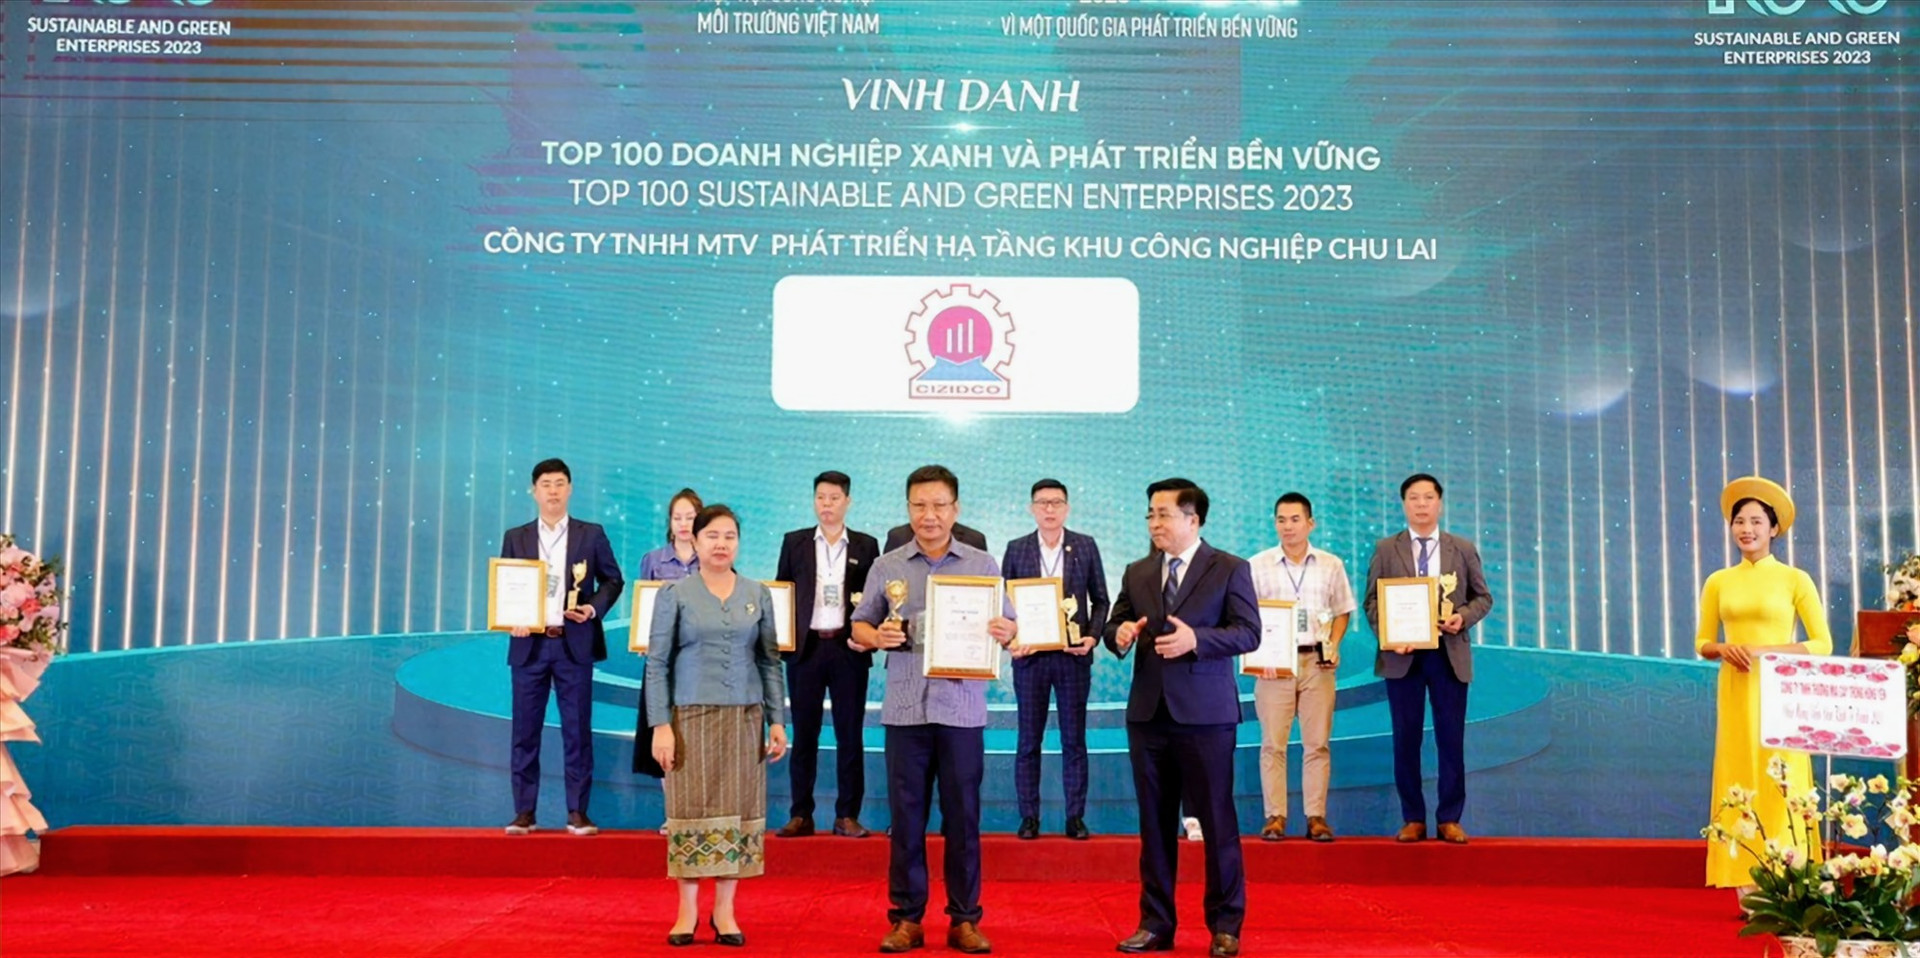 Giám đốc CIZIDCO Lê Ngọc Thủy ( giữa, hàng đầu) nhận Chứng nhận Top 100 Doanh nghiệp xanh và phát triển bền vững năm 2023. Ảnh CIZIDCO cung cấp